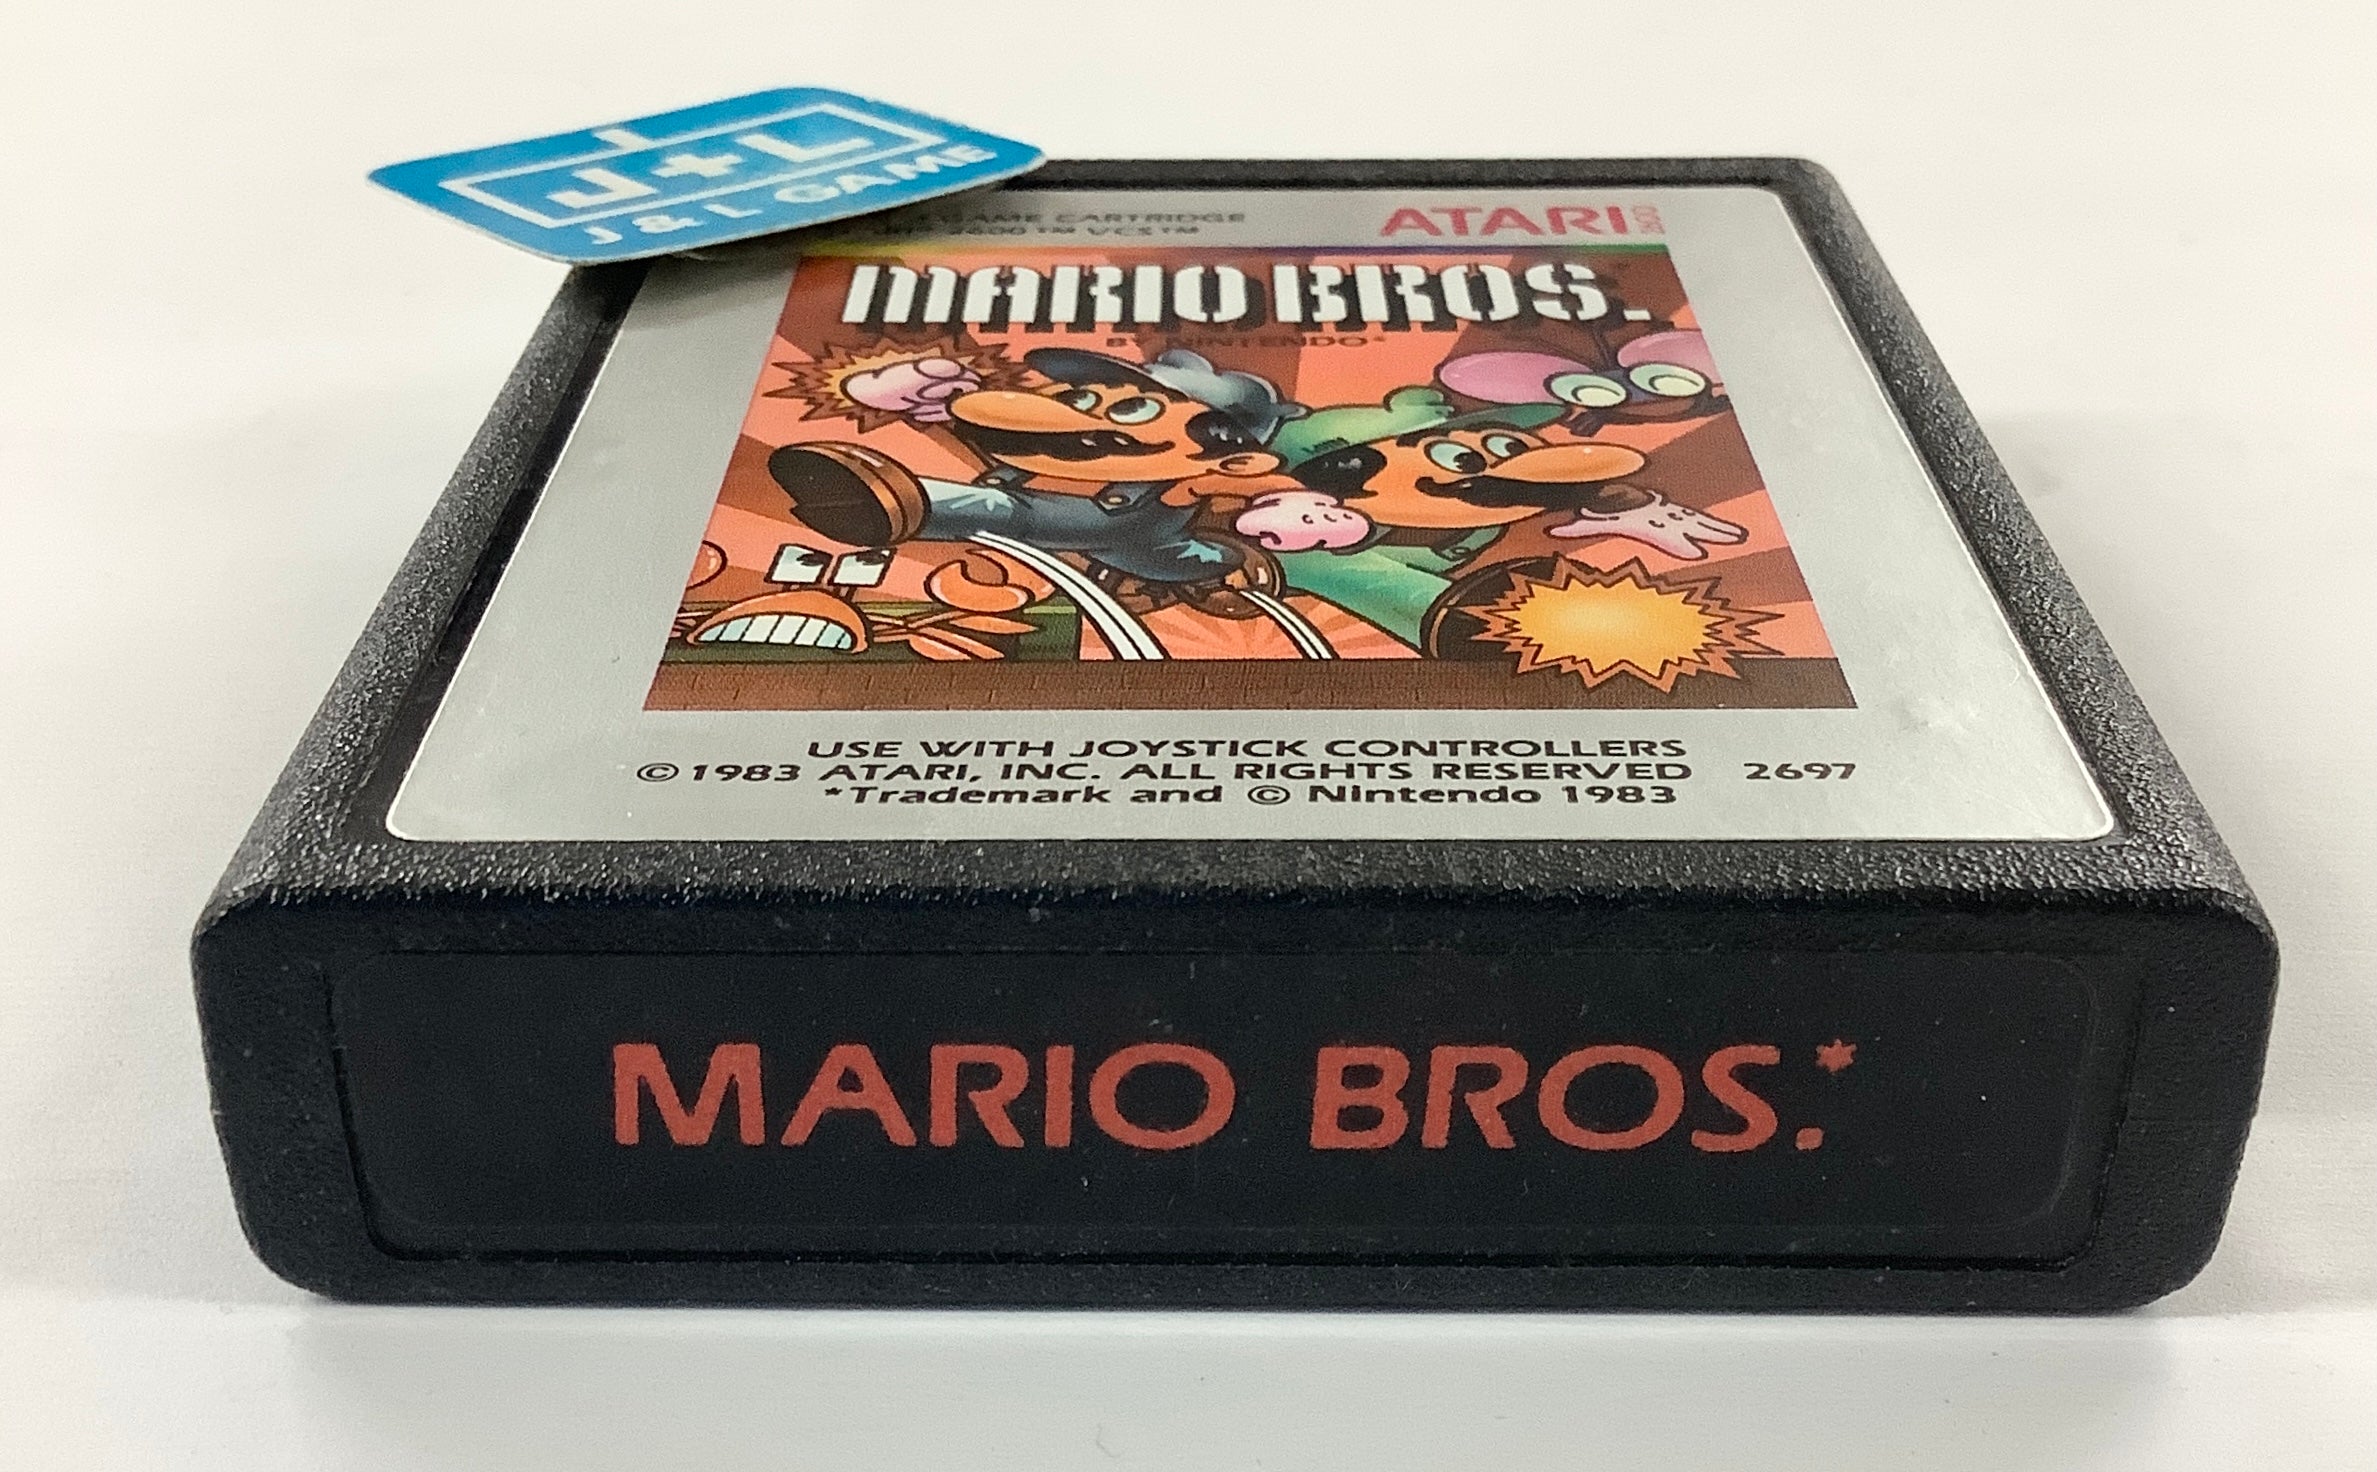 Mario Bros. - Atari 2600 [Pre-Owned] Video Games Atari Inc.   